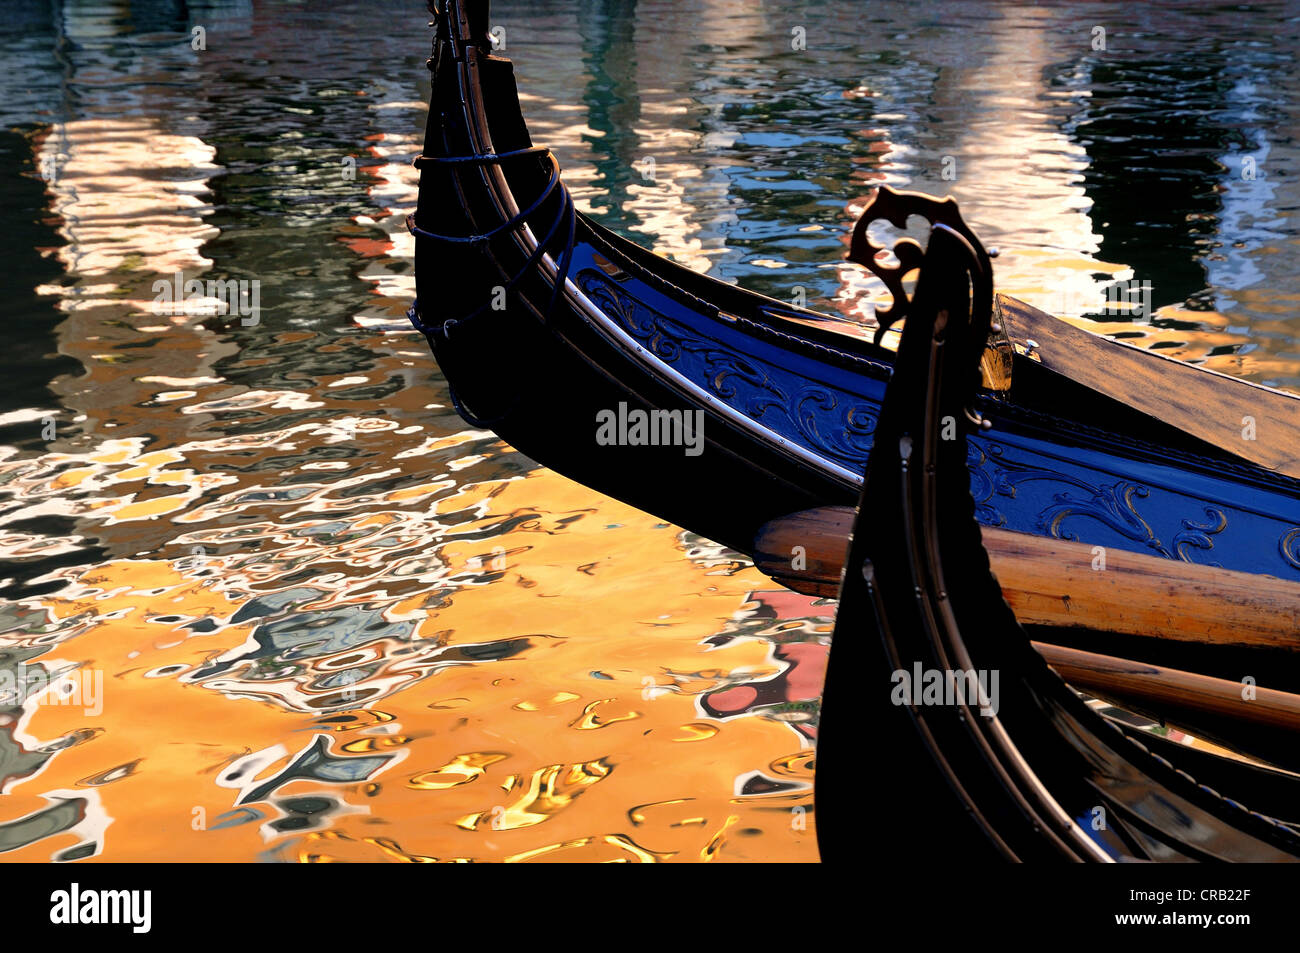 Dettaglio della gondola veneziana contro acqua riflessioni Foto Stock